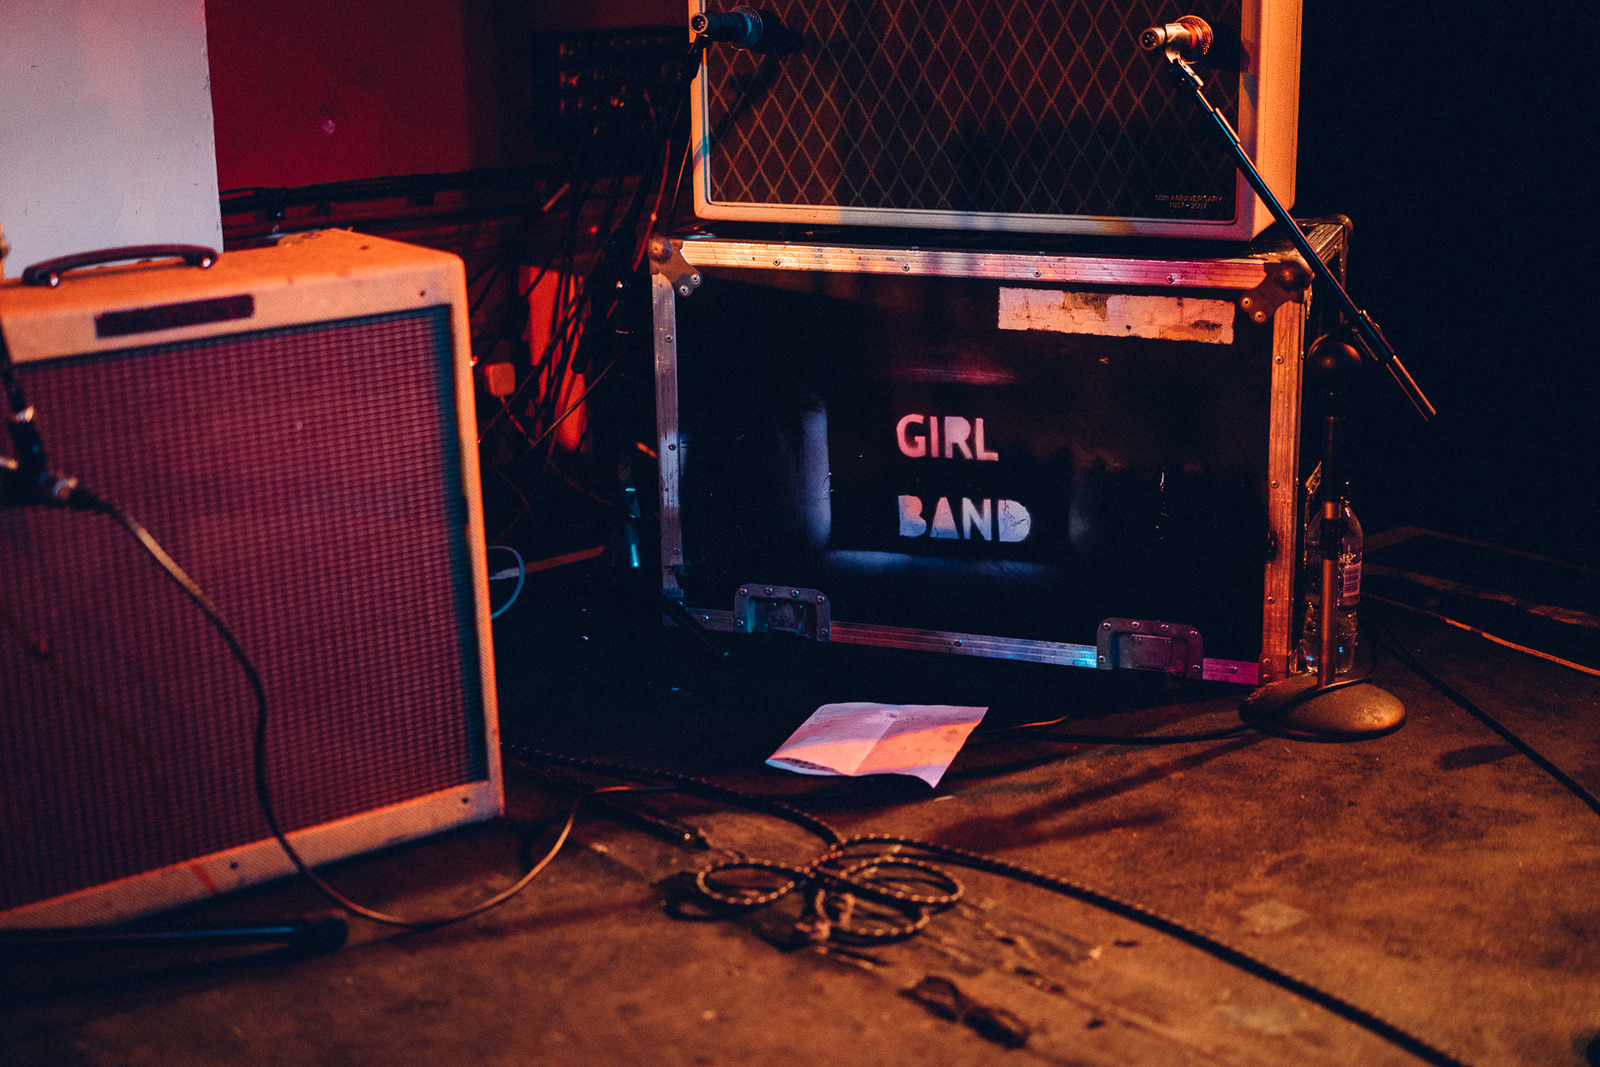 Girl Band